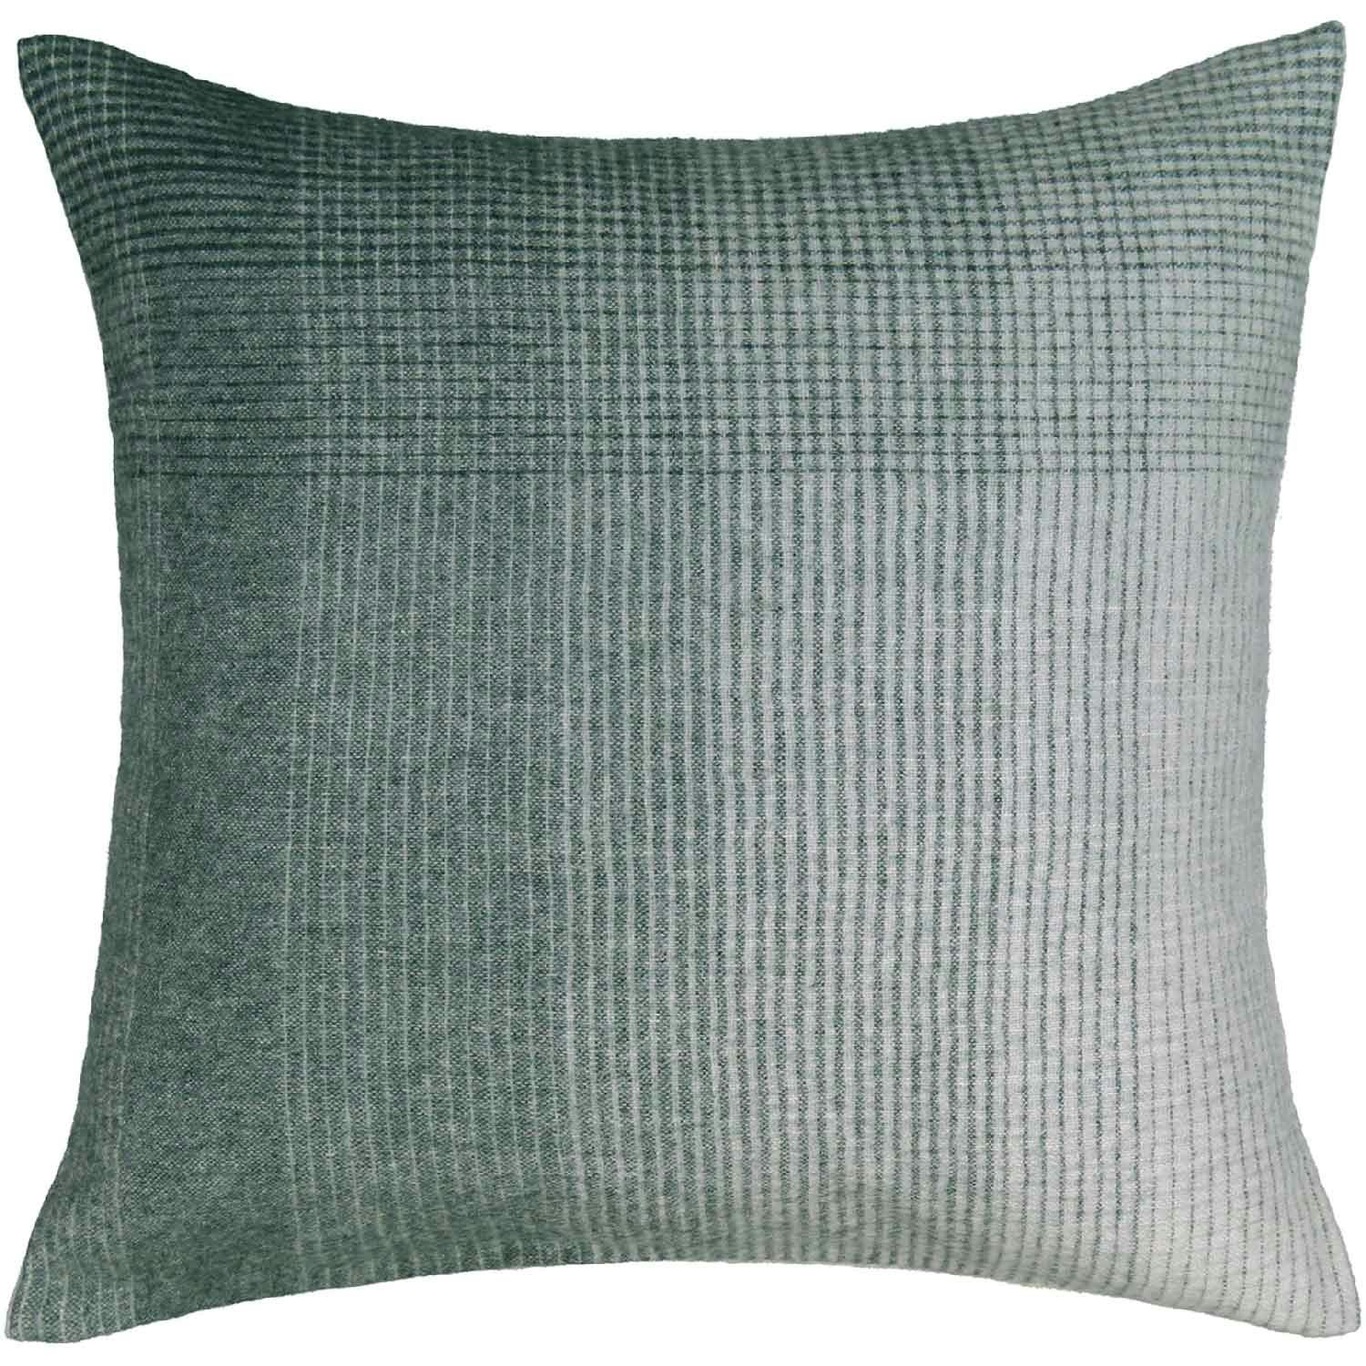 Horizon Cushion Cover 50x50 cm, Evergreen